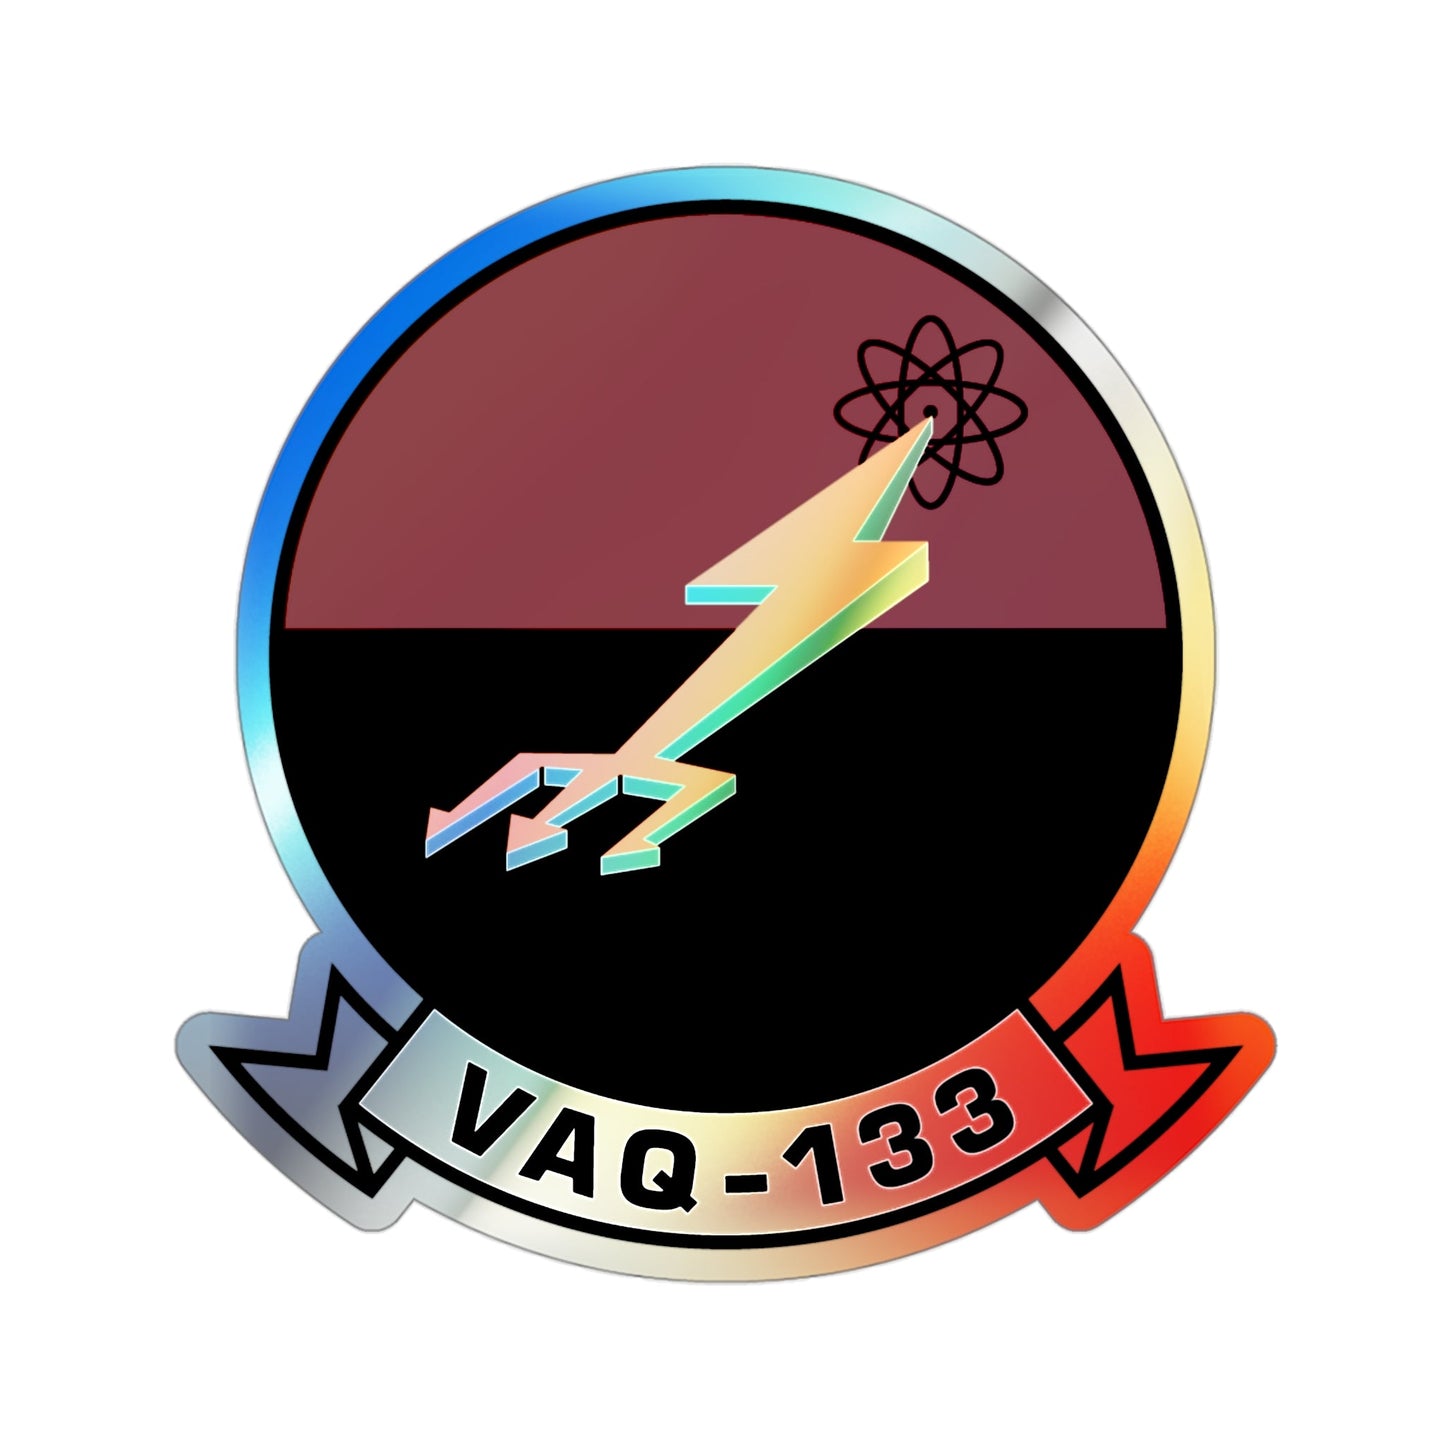 VAQ 133 (U.S. Navy) Holographic STICKER Die-Cut Vinyl Decal-3 Inch-The Sticker Space